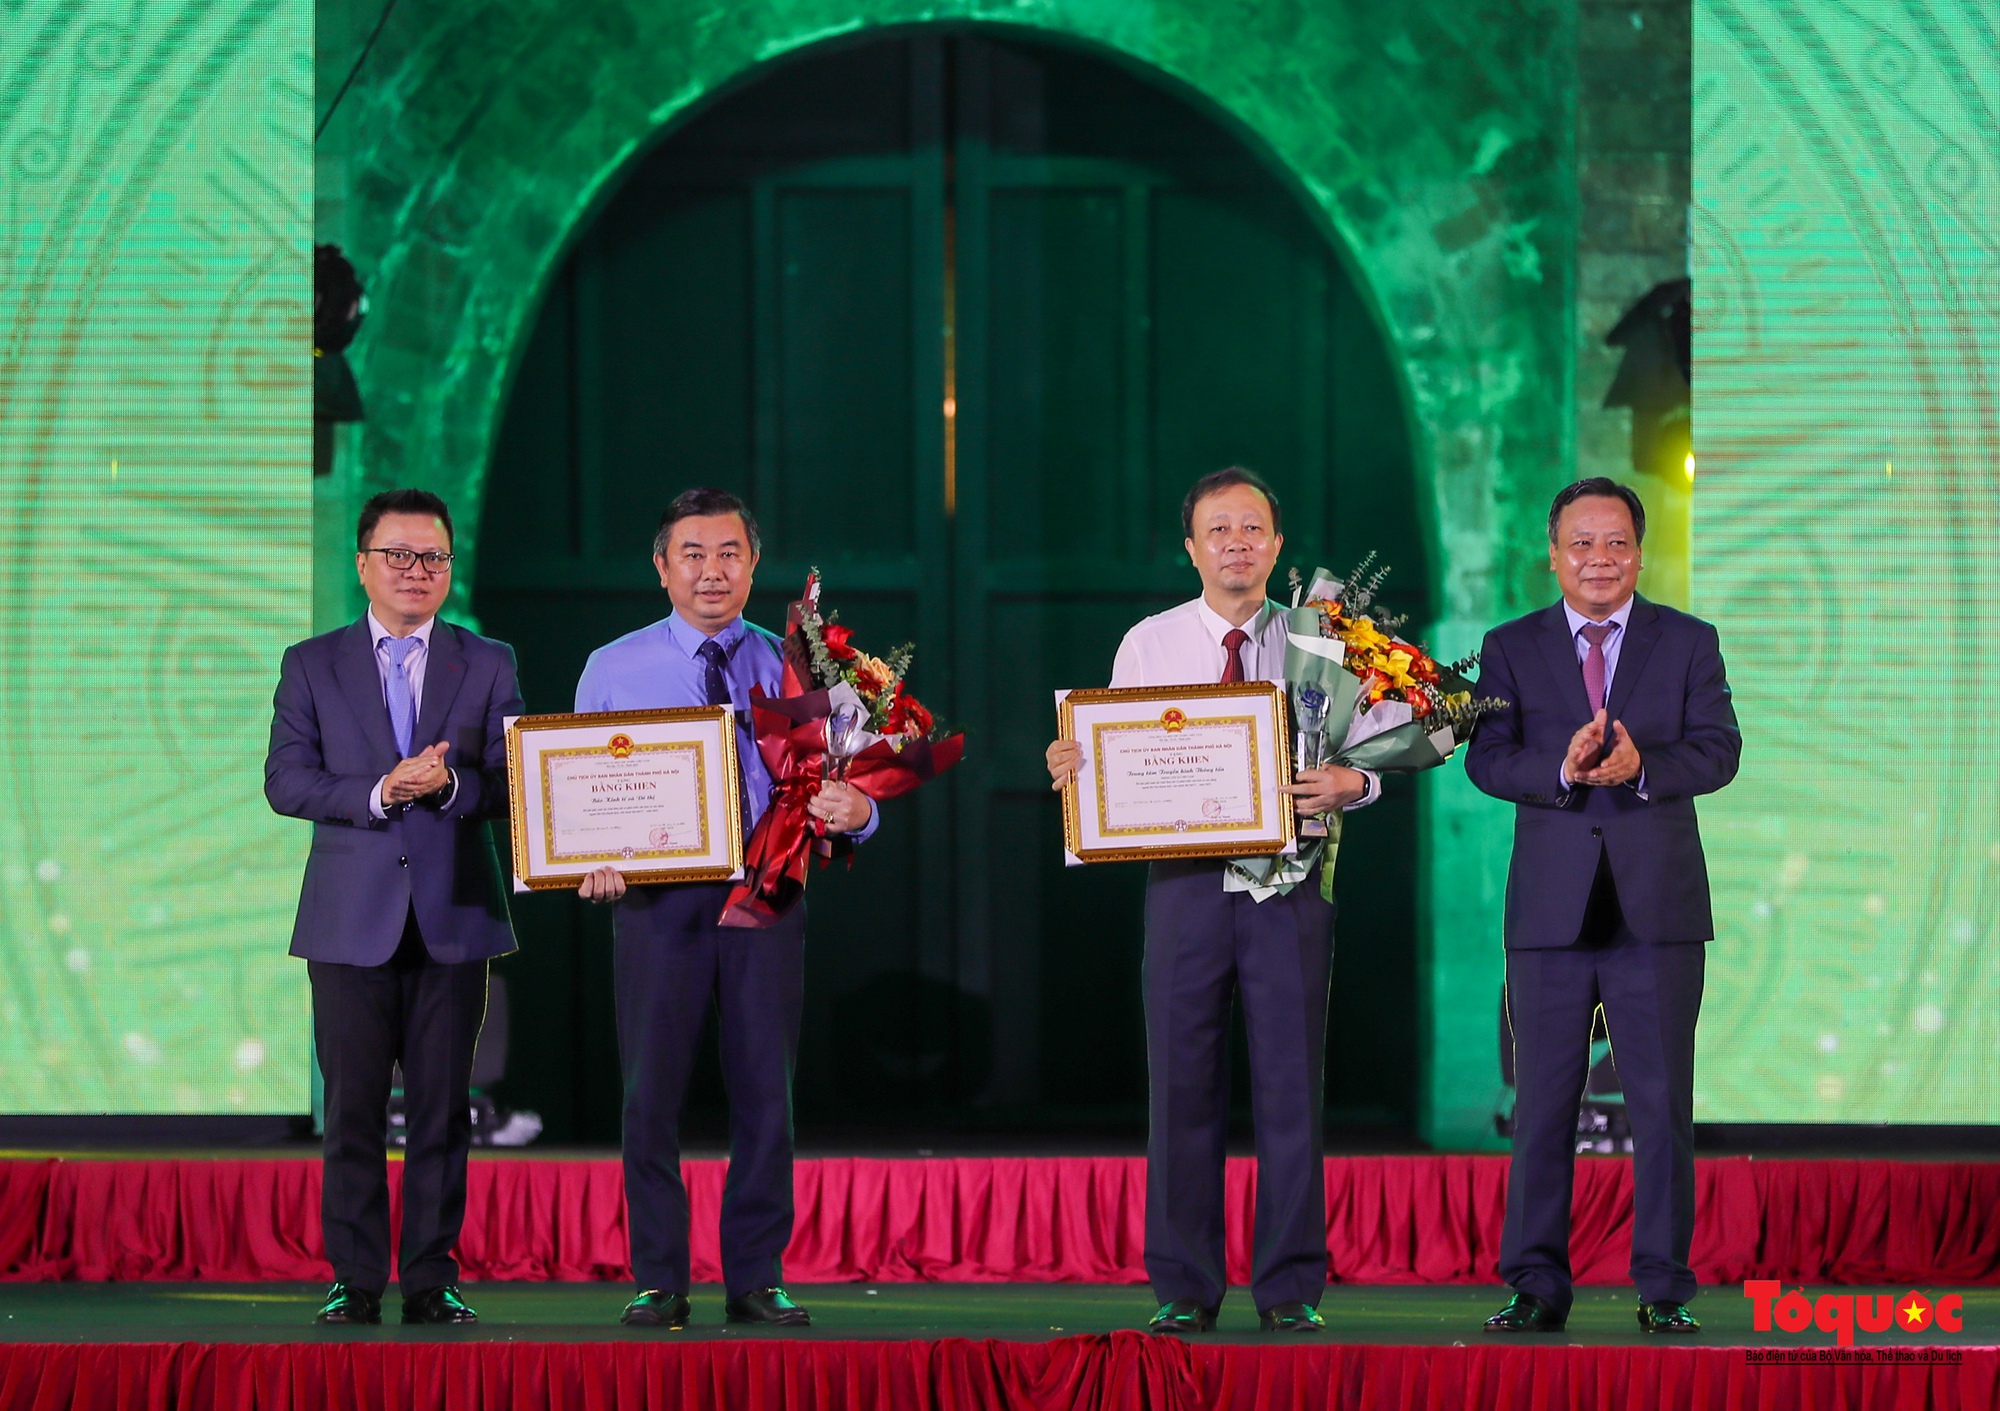 Chùm ảnh: Lễ trao Giải báo chí về phát triển văn hóa và xây dựng người Hà Nội thanh lịch, văn minh lần thứ V - năm 2022 - Ảnh 3.